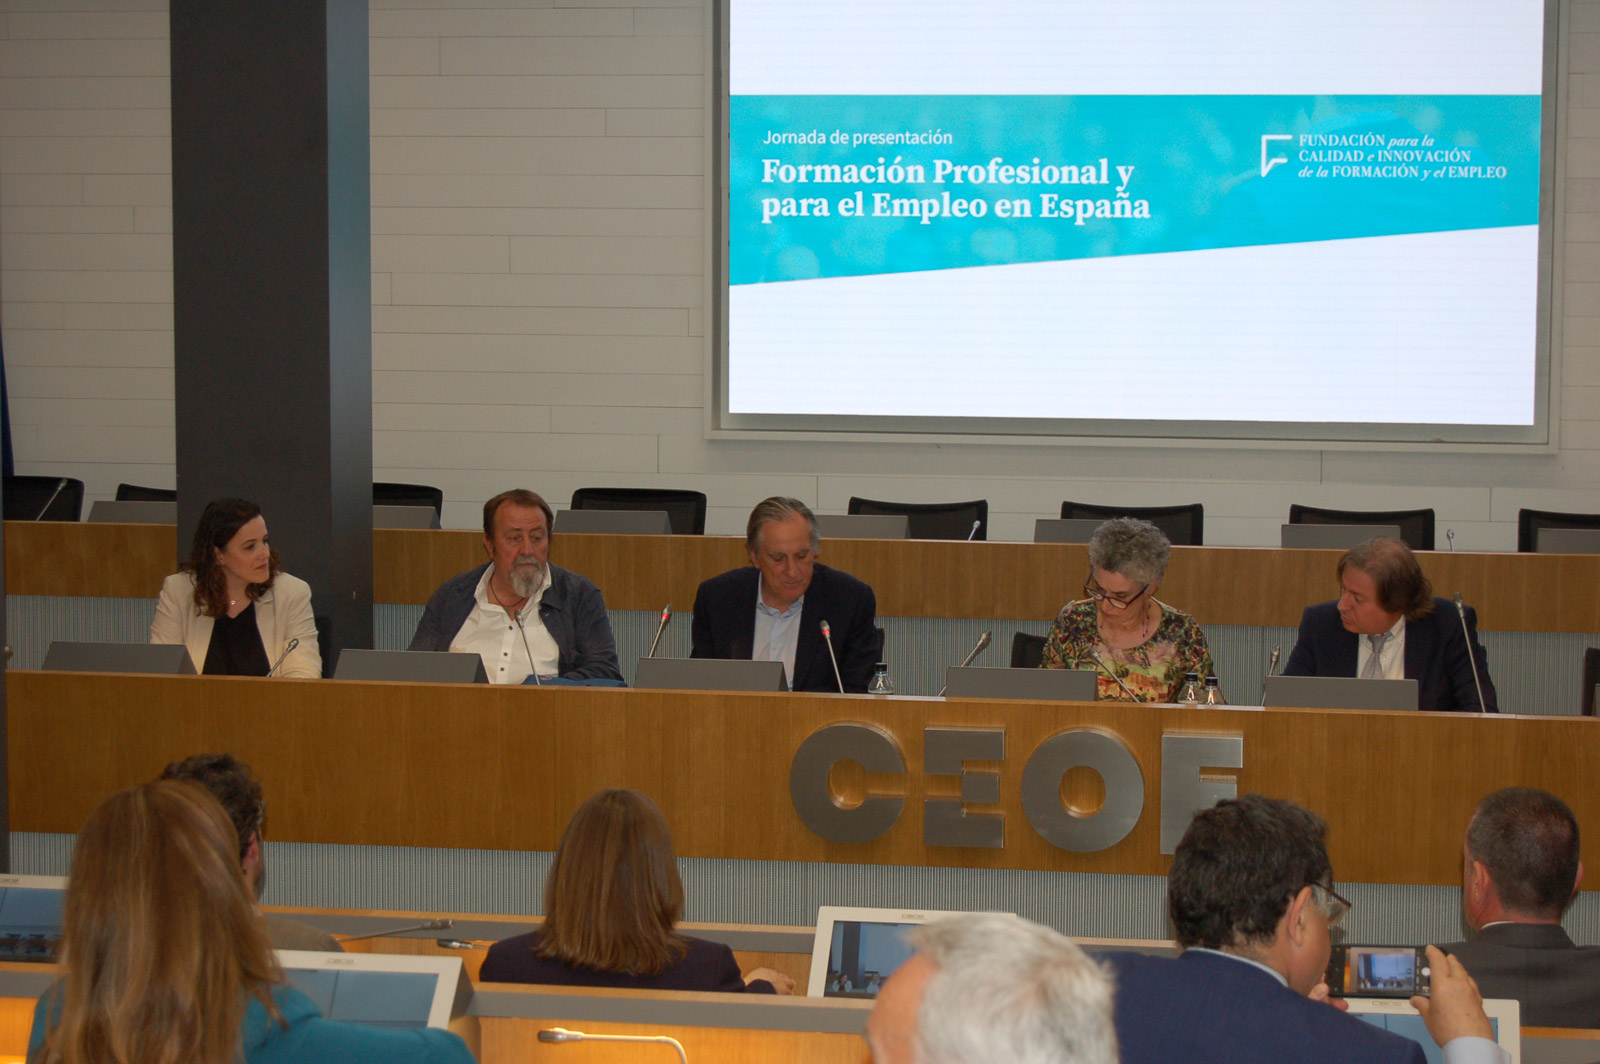 Presentación del Informe Formación Profesional y para el Empleo en España